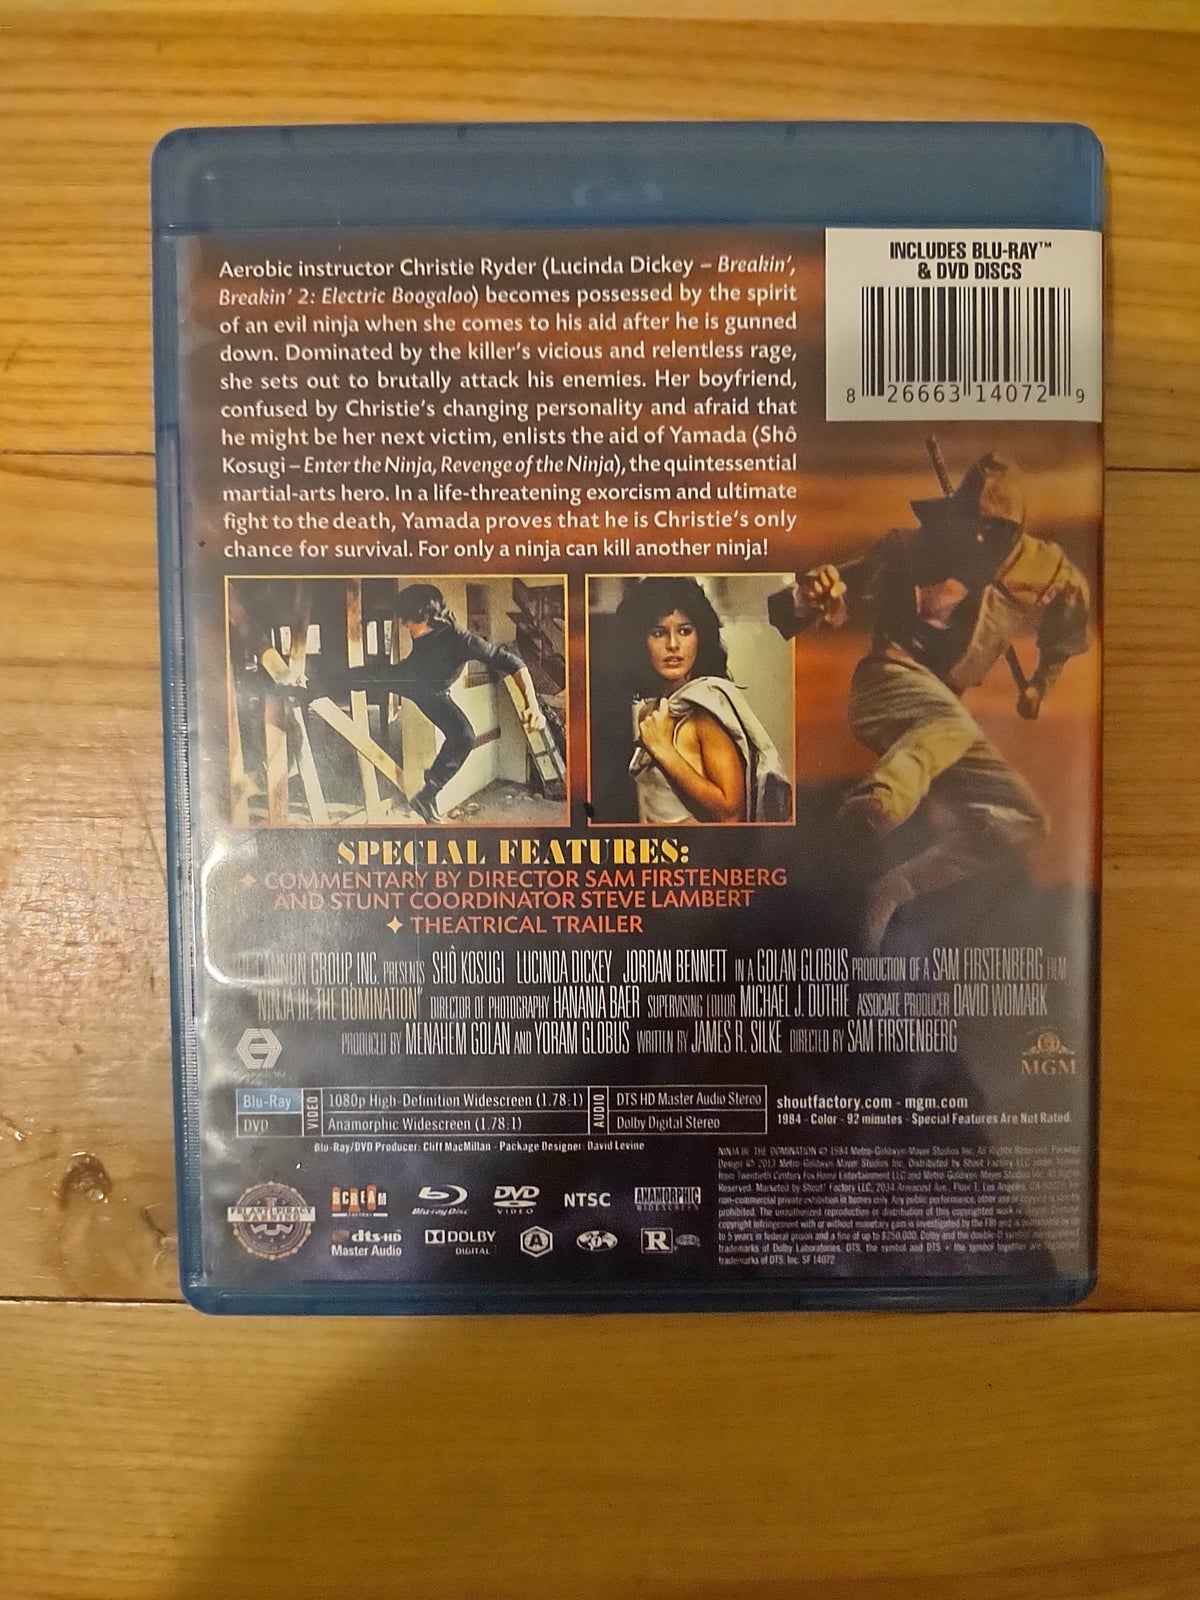 Ninja III: Domination (BD+DVD), instruktør Sam